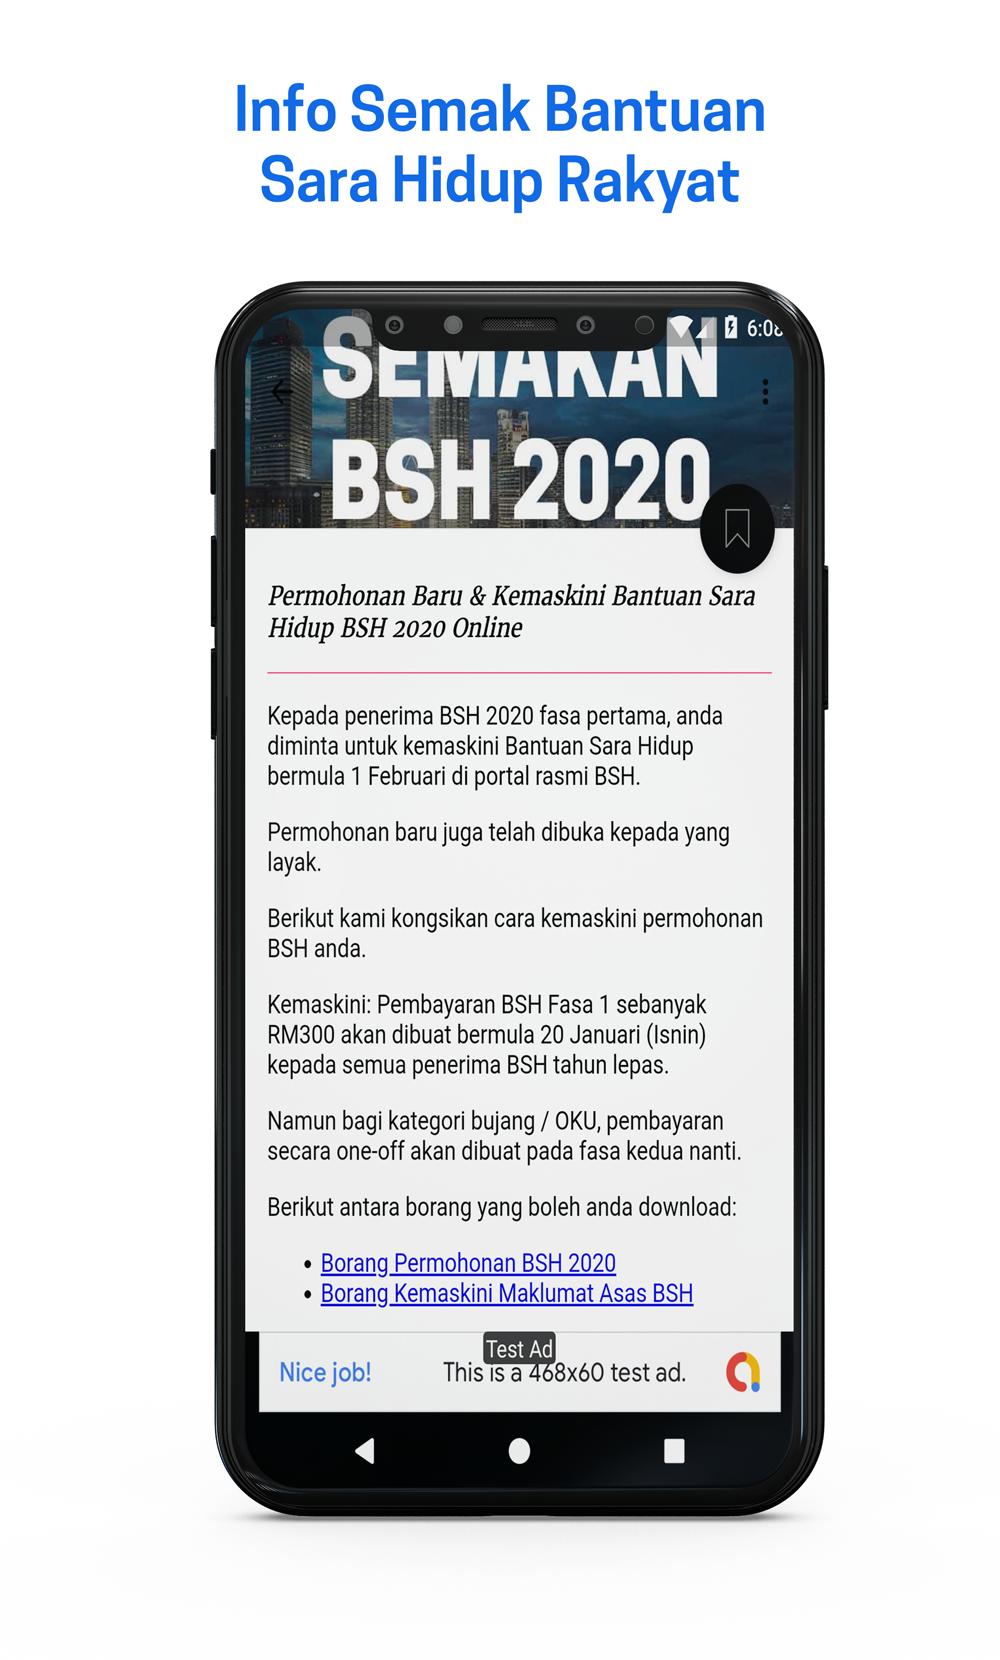 Semakan Info Bsh Bantuan Sara Hidup Malaysia For Android Apk Download